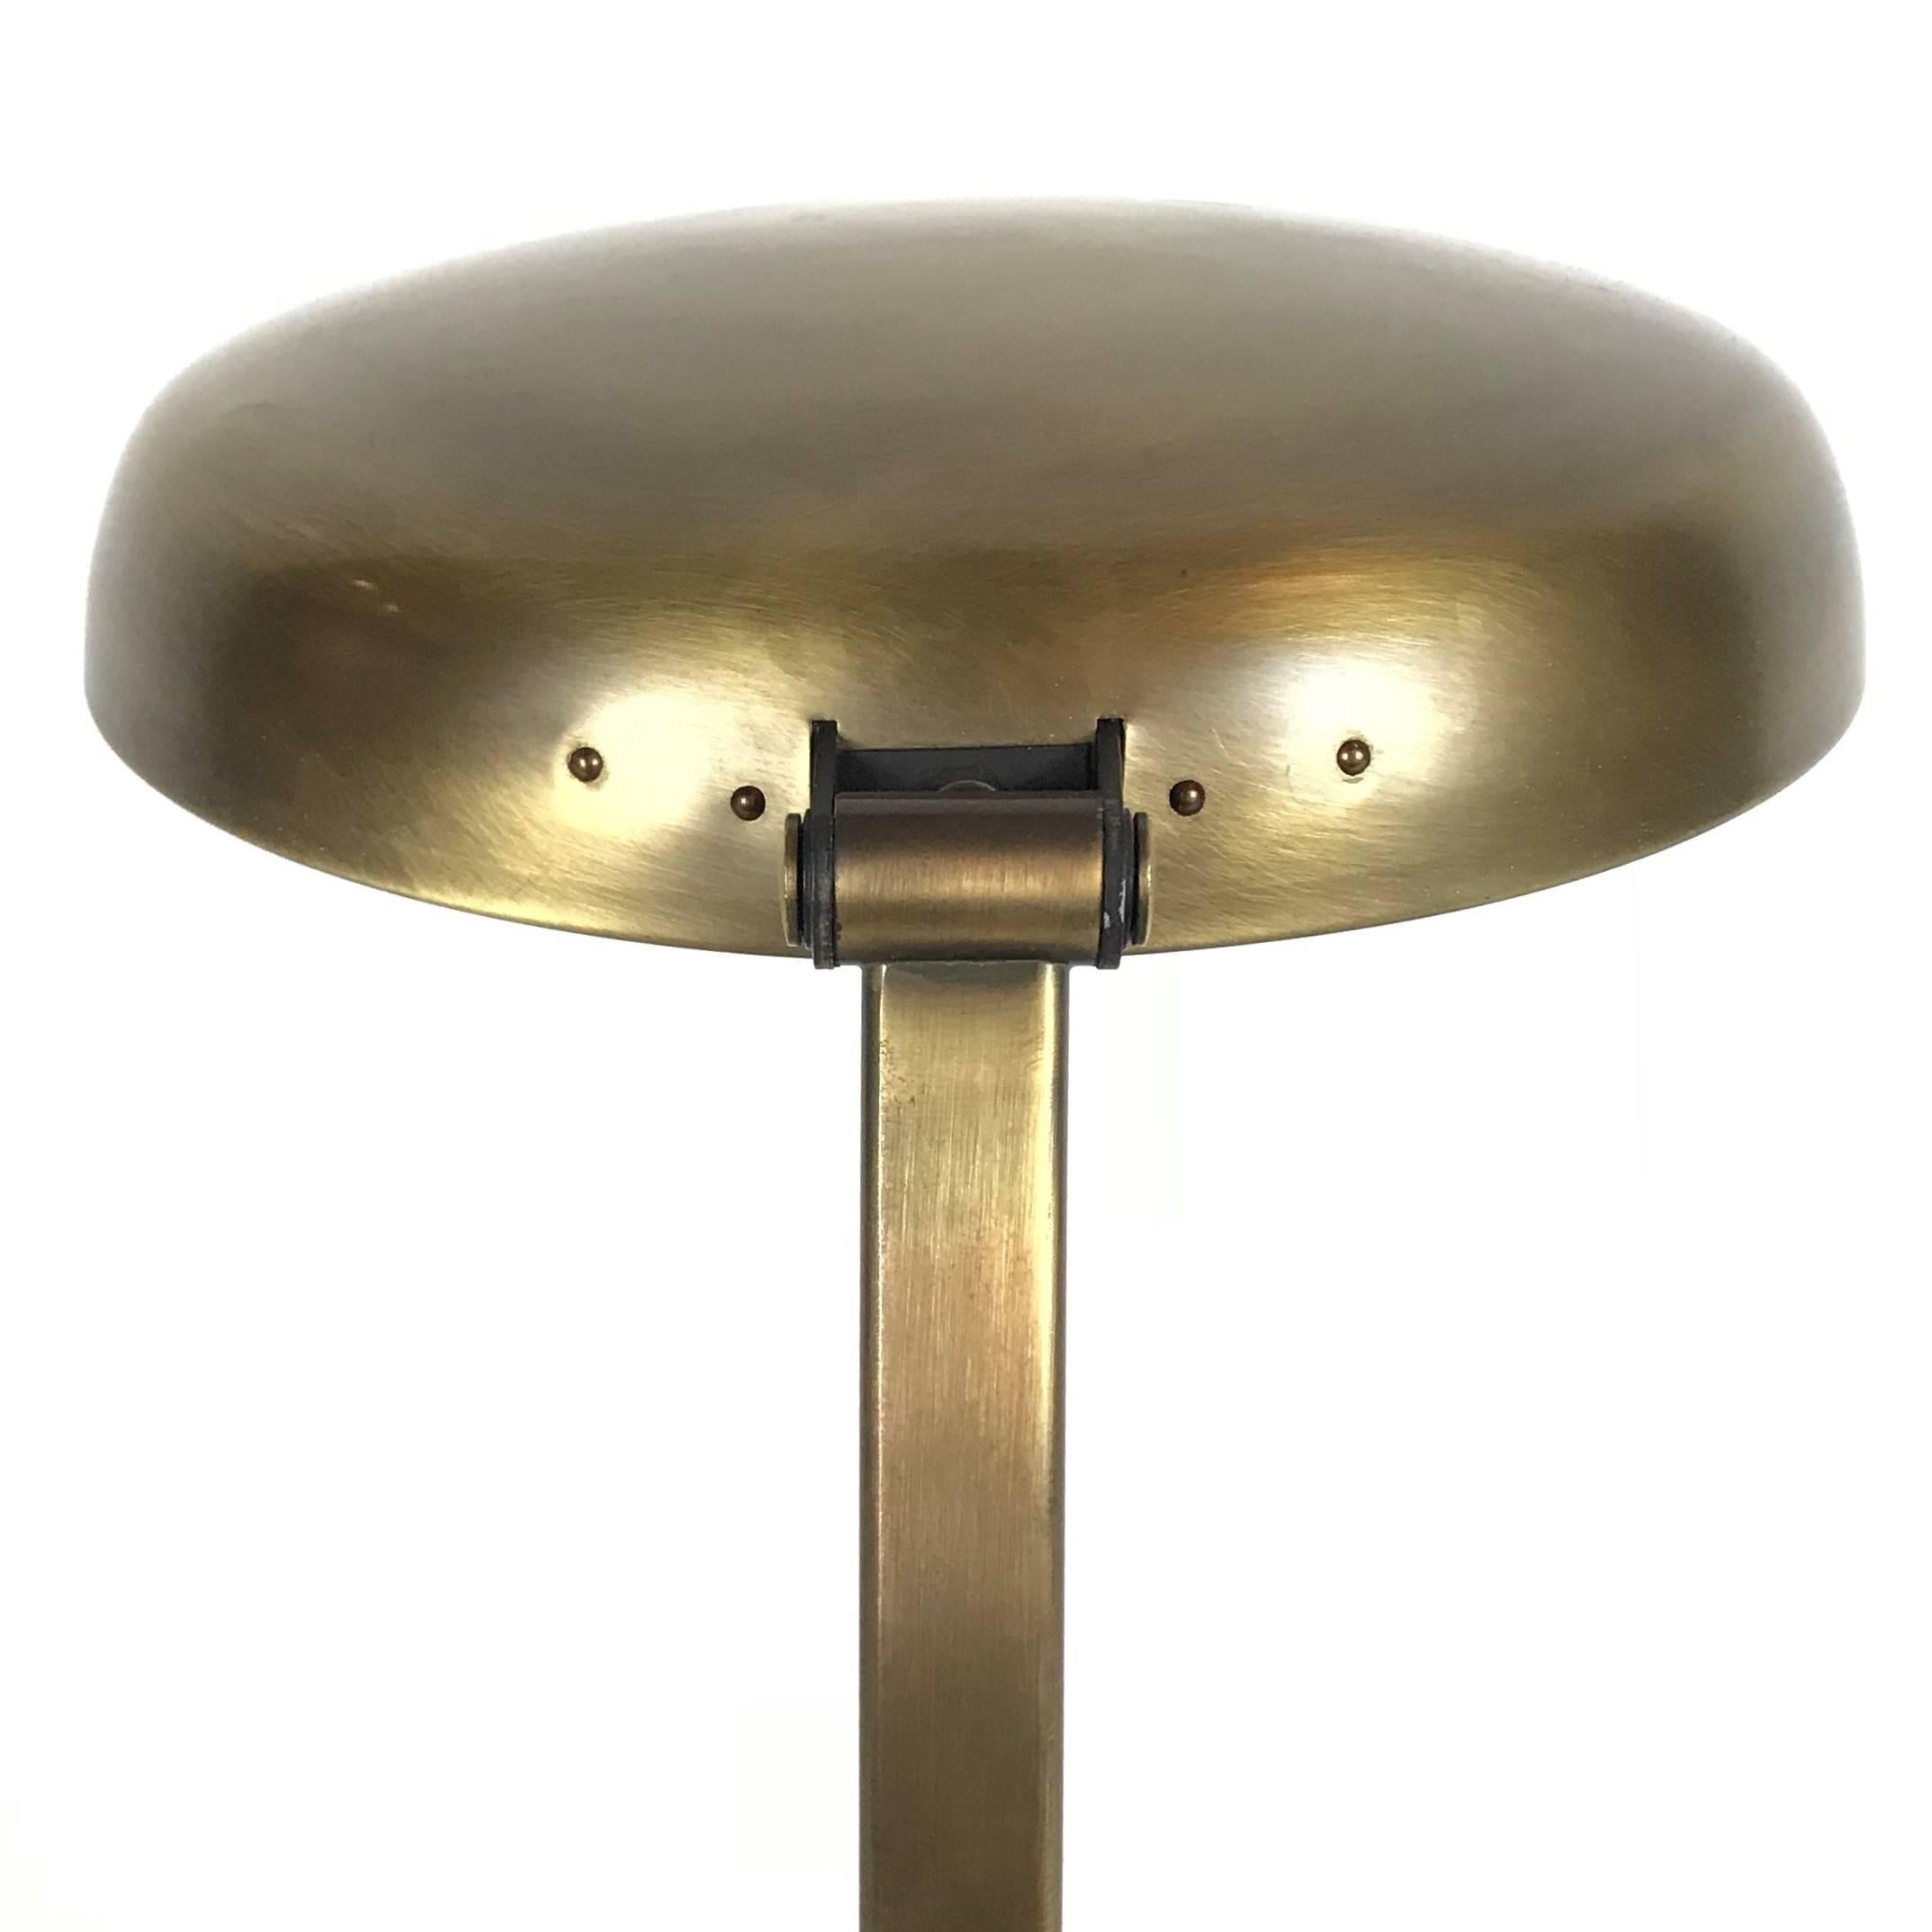 Hillebrand UFO Tischlampe aus Messing, 1960er Jahre Deutschland (Metallarbeit)